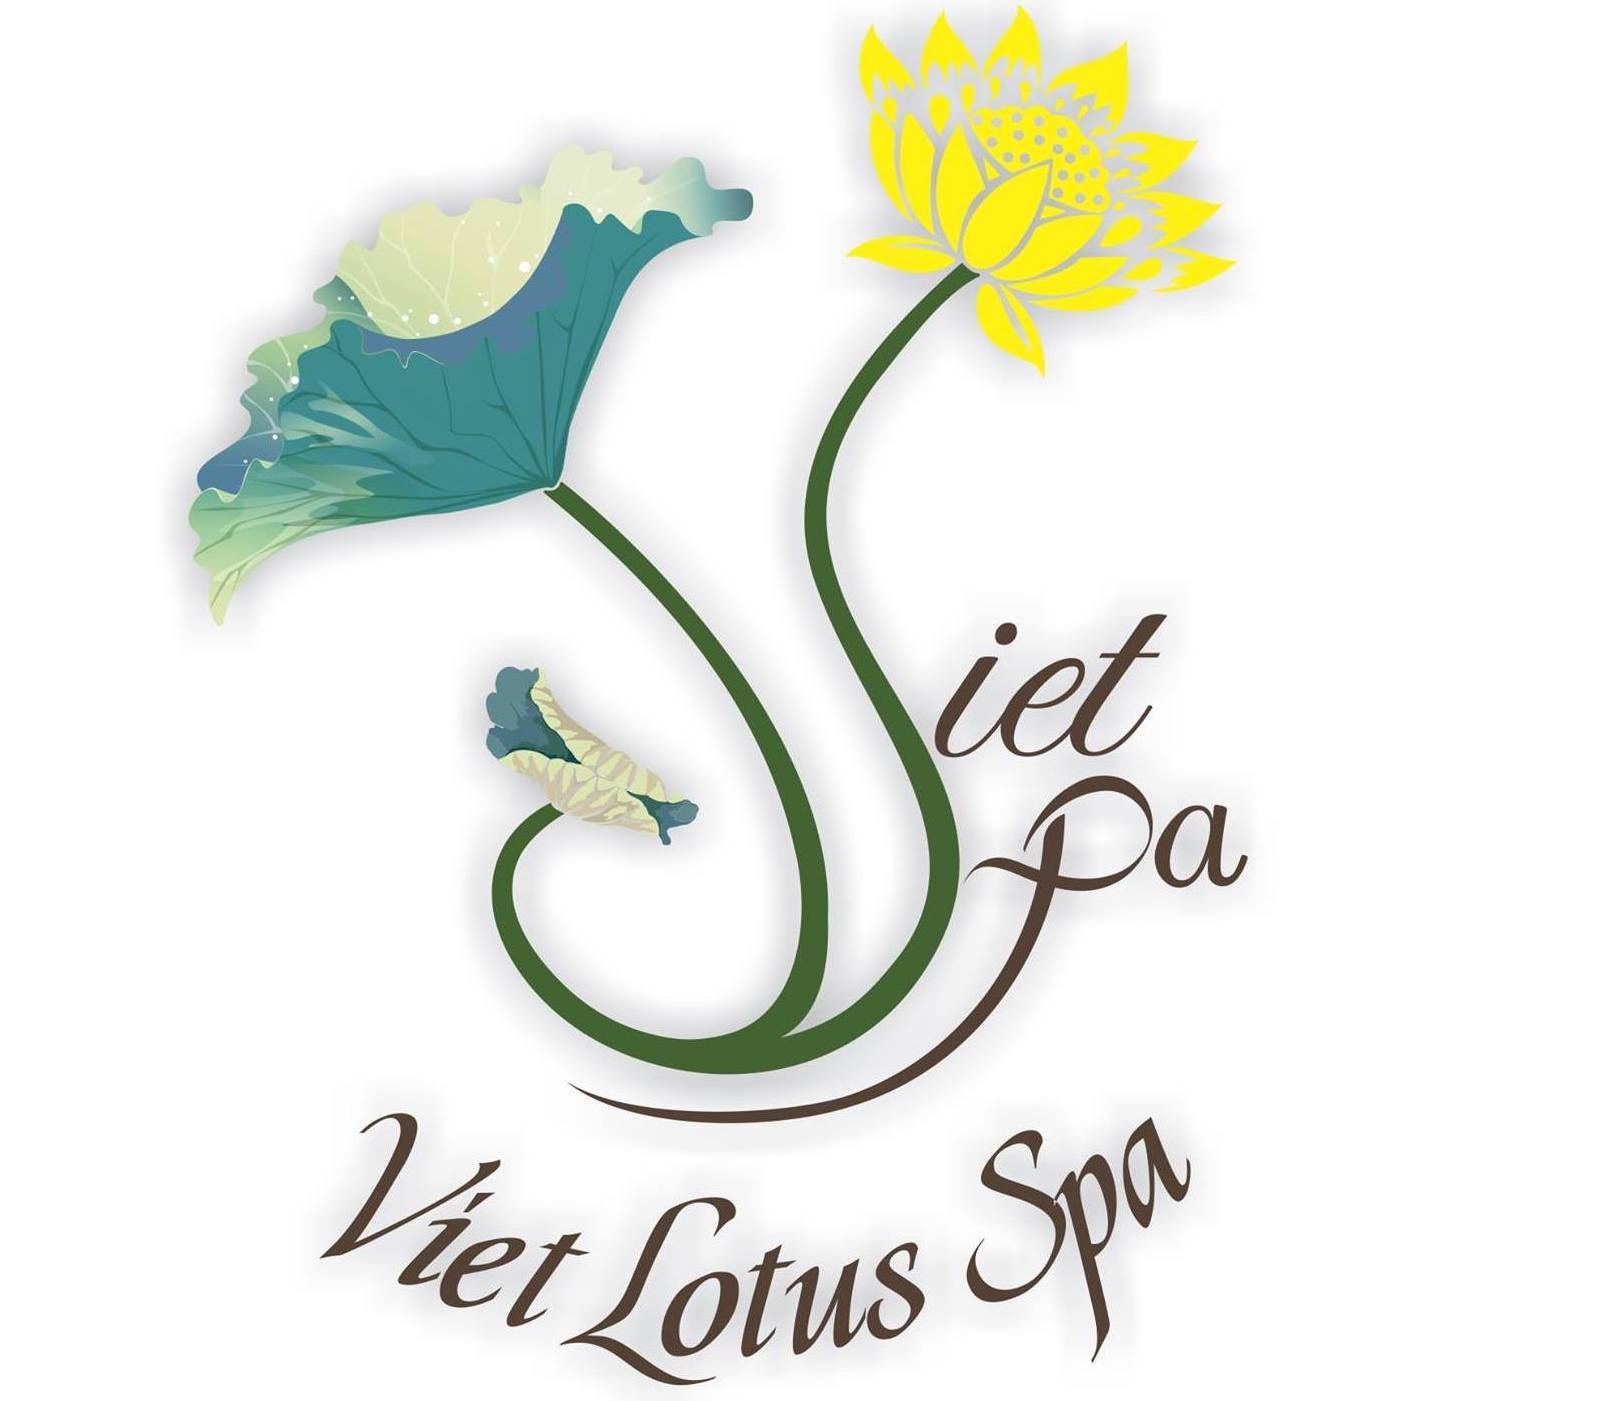 25.Viet Lotus Spa